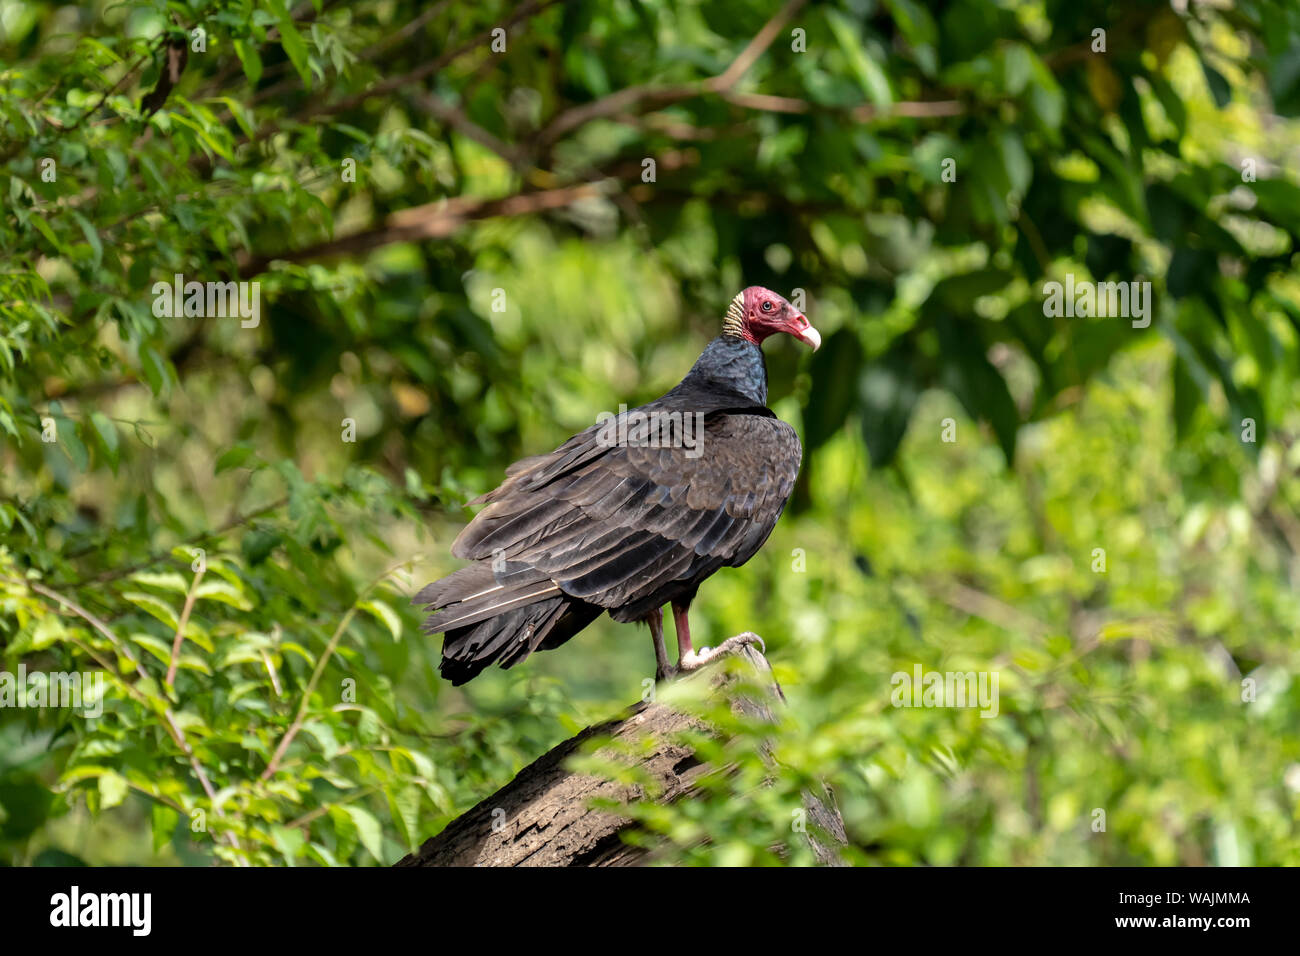 Pacaya Samiria Reserve, Peru. Turkey vulture in a tree. Stock Photo